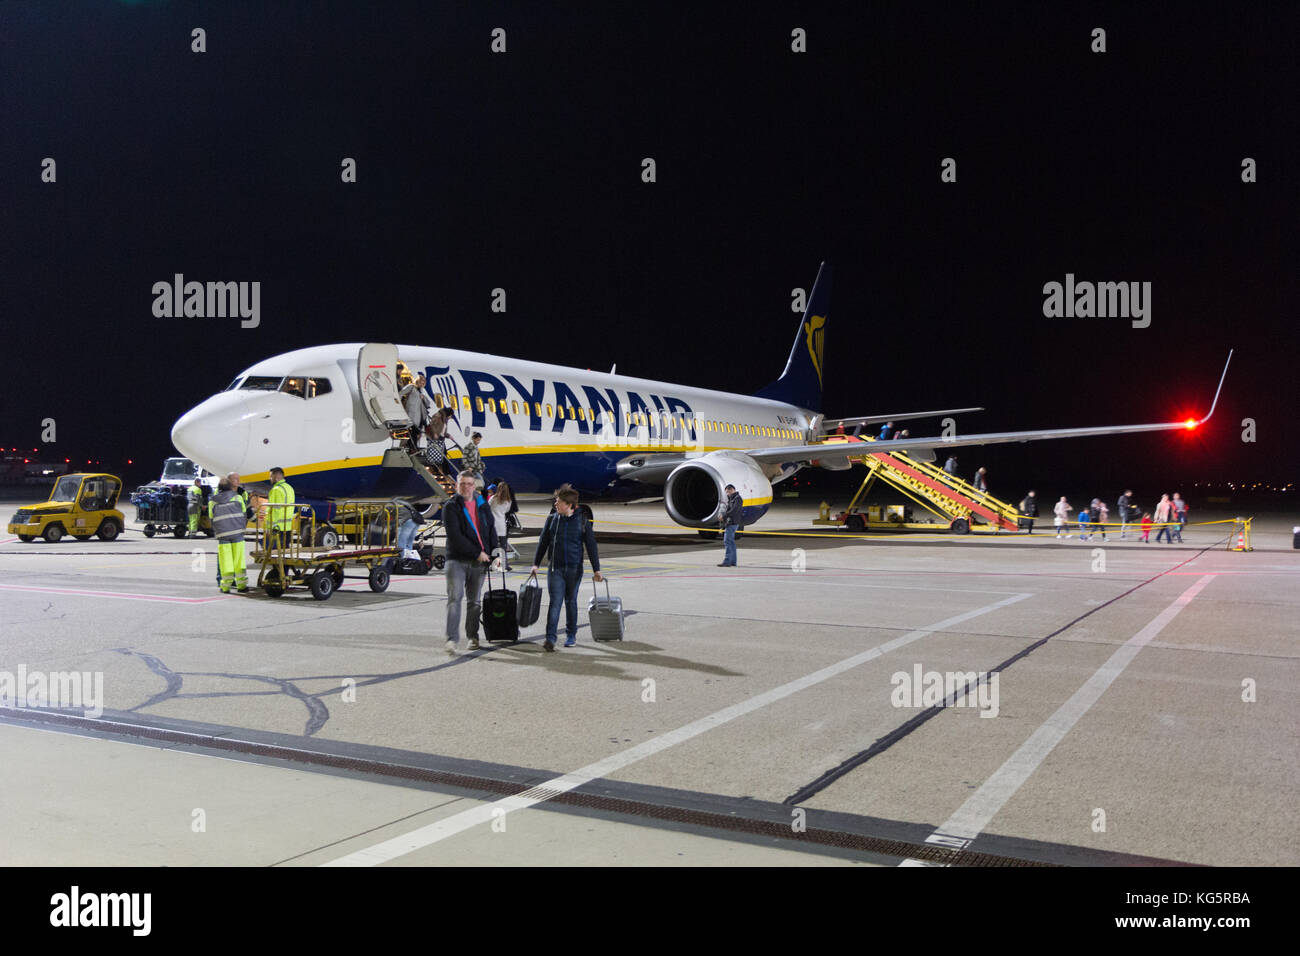 Eine Ryanair Boeing 737-800 Flugzeuge am Flughafen Bratislava Start- und Landebahn in der Nacht geparkt. Die Menschen sind zu Fuß aus dem Flugzeug. Stockfoto